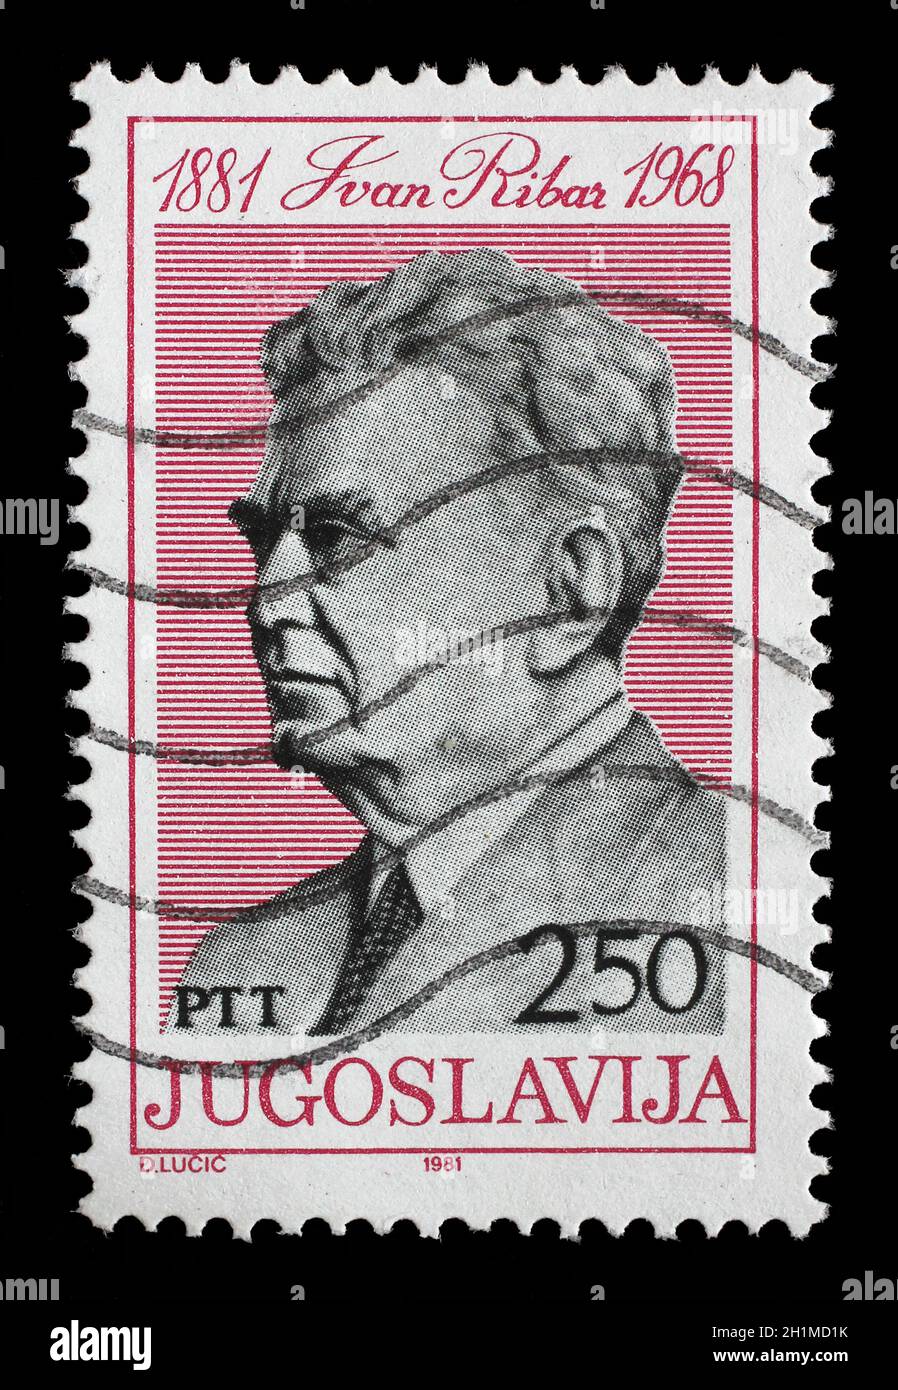 Die in Jugoslawien gedruckte Briefmarke zeigt Ivan Ribar (21. Januar 1881 - 11. Juni 1968) jugoslawischer Politiker und Soldat kroatischer Abstammung, um 1981 Stockfoto